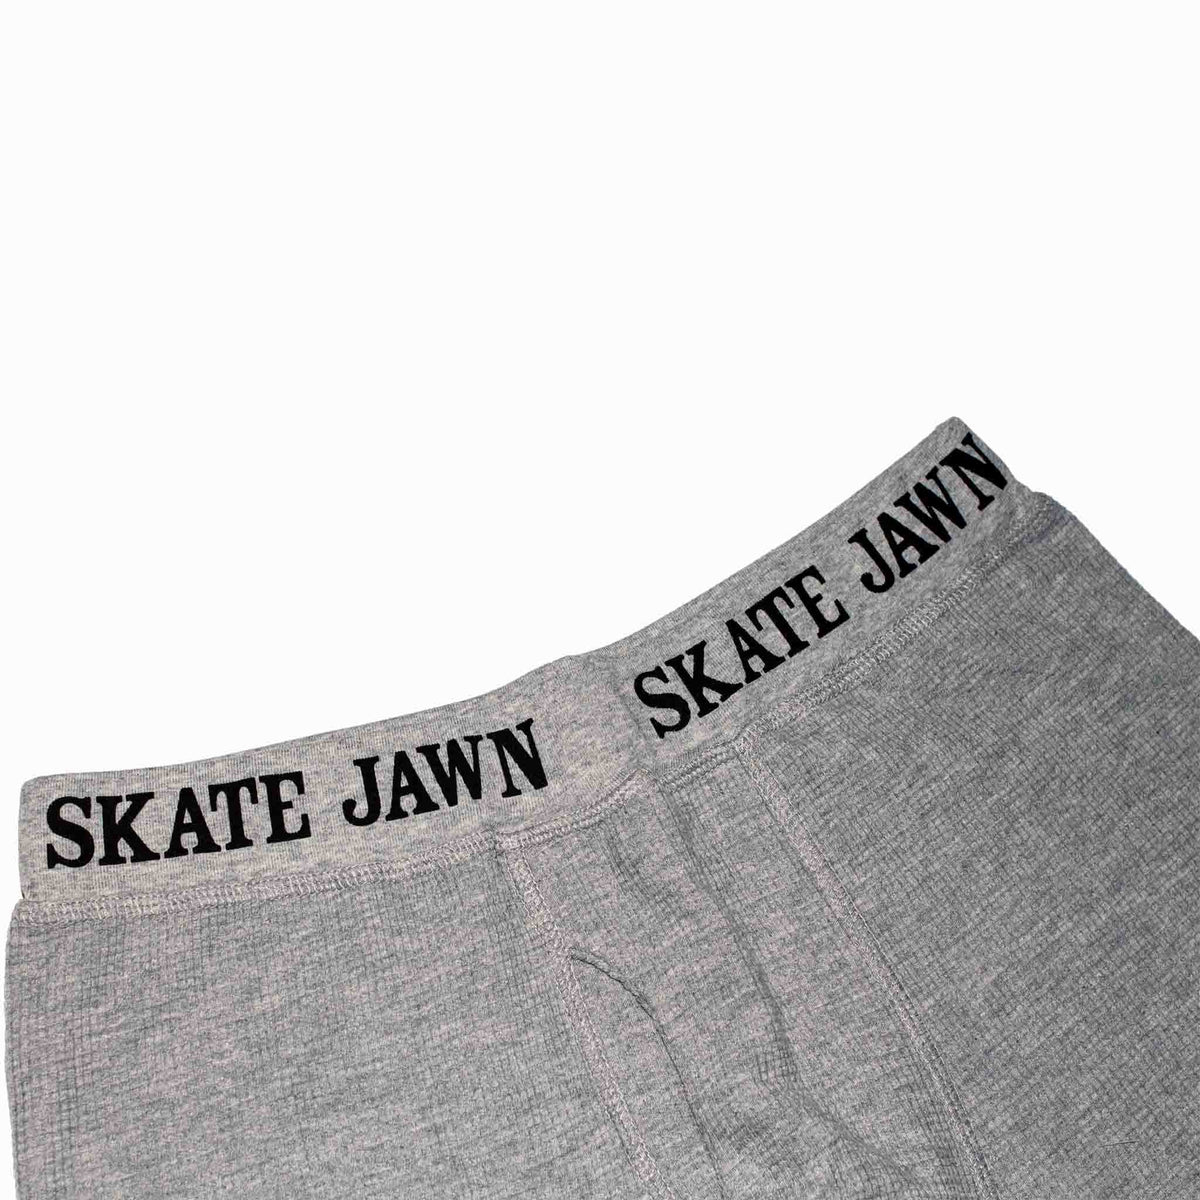 Skate Jawn - Long Jawns - Grey